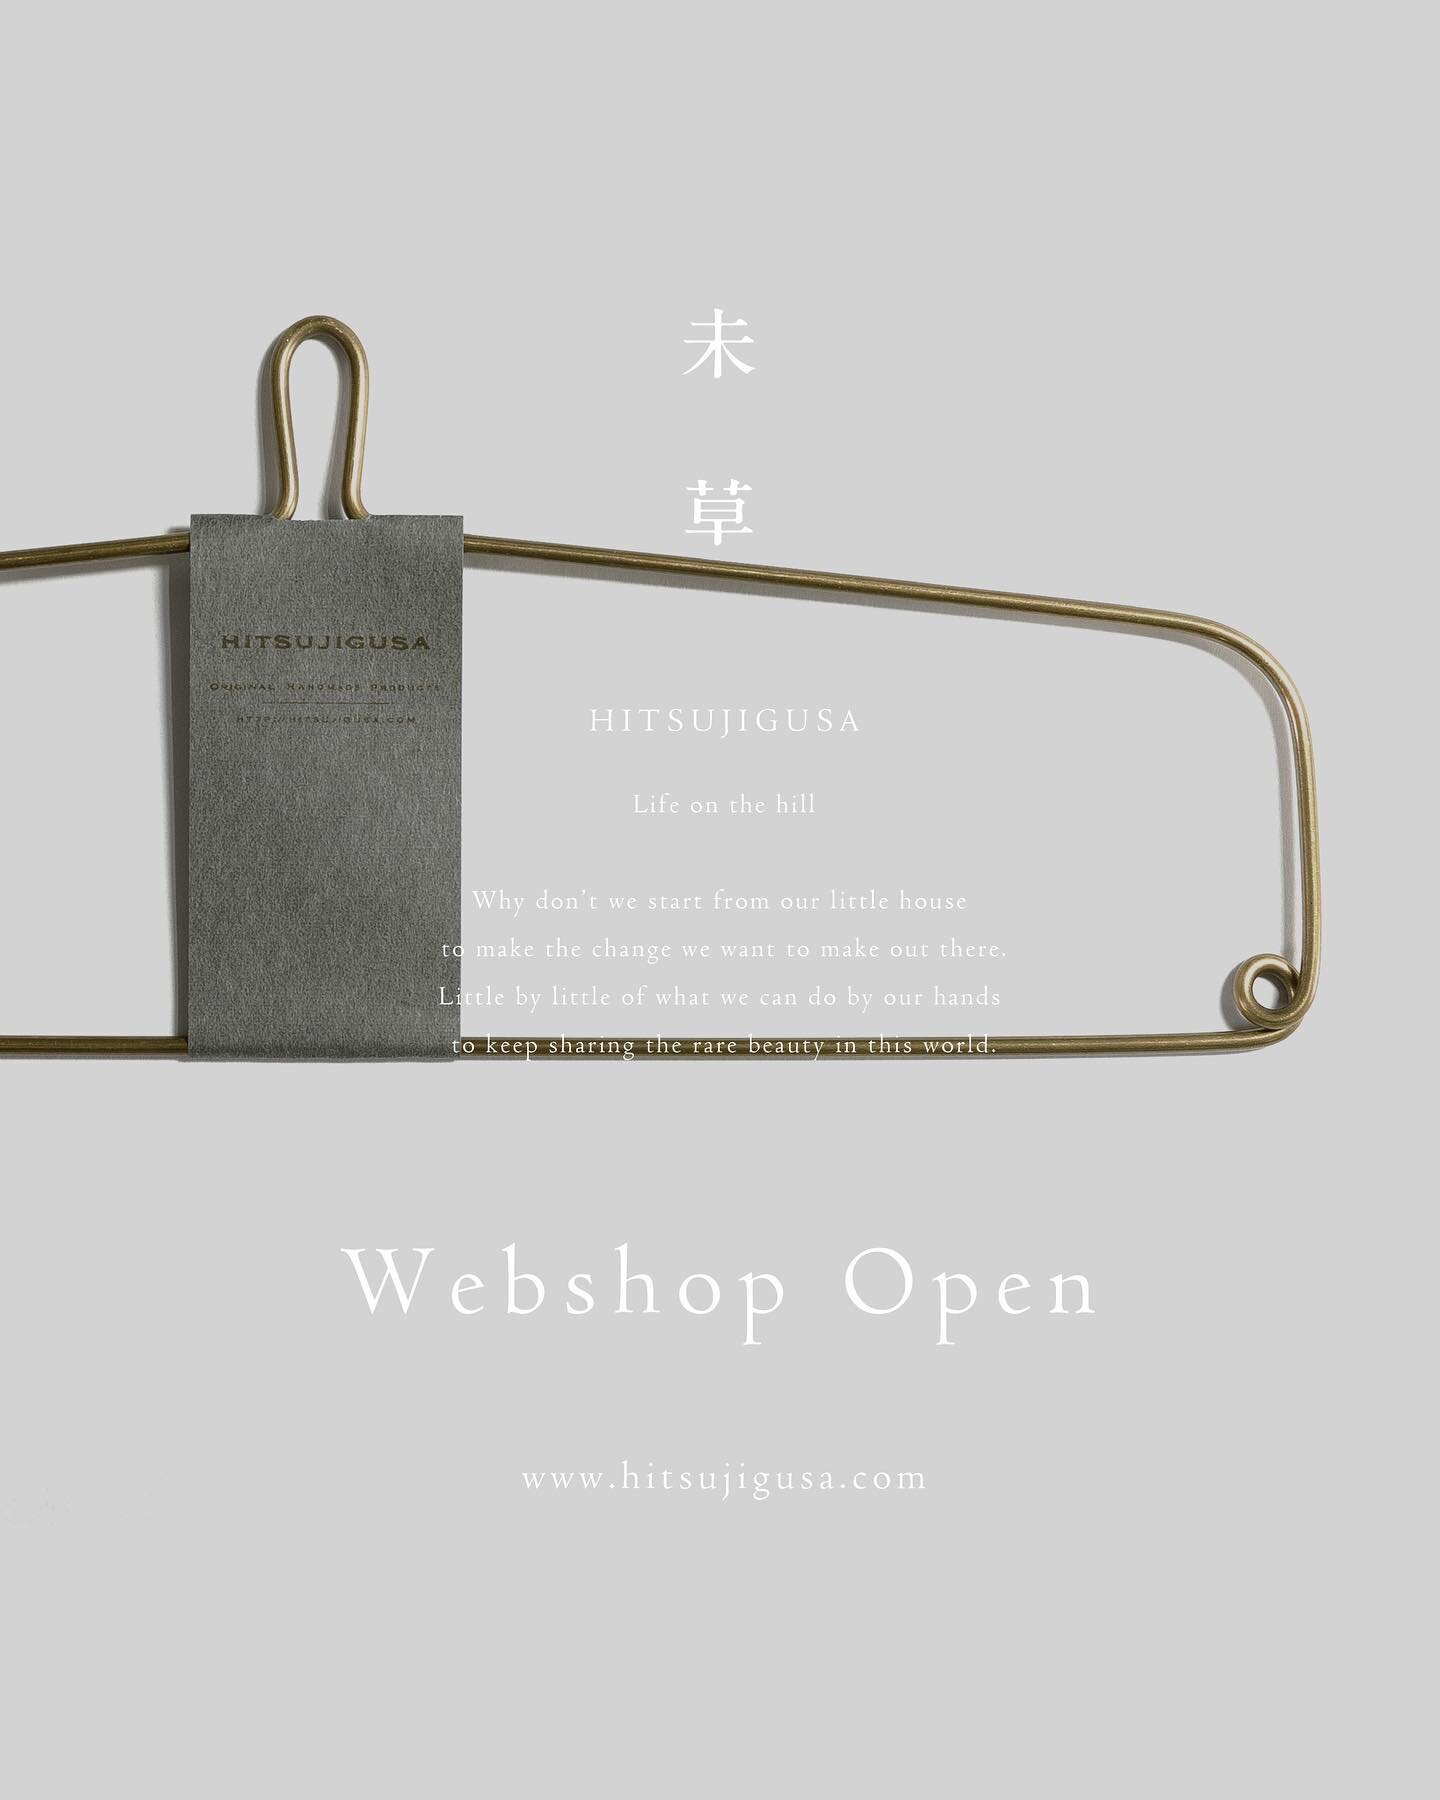 Webshop Open

https://shop.hitsujigusa.com/

#hitsujigusa
#未草
@hitsujigusa_

HP design
@16_suzuki